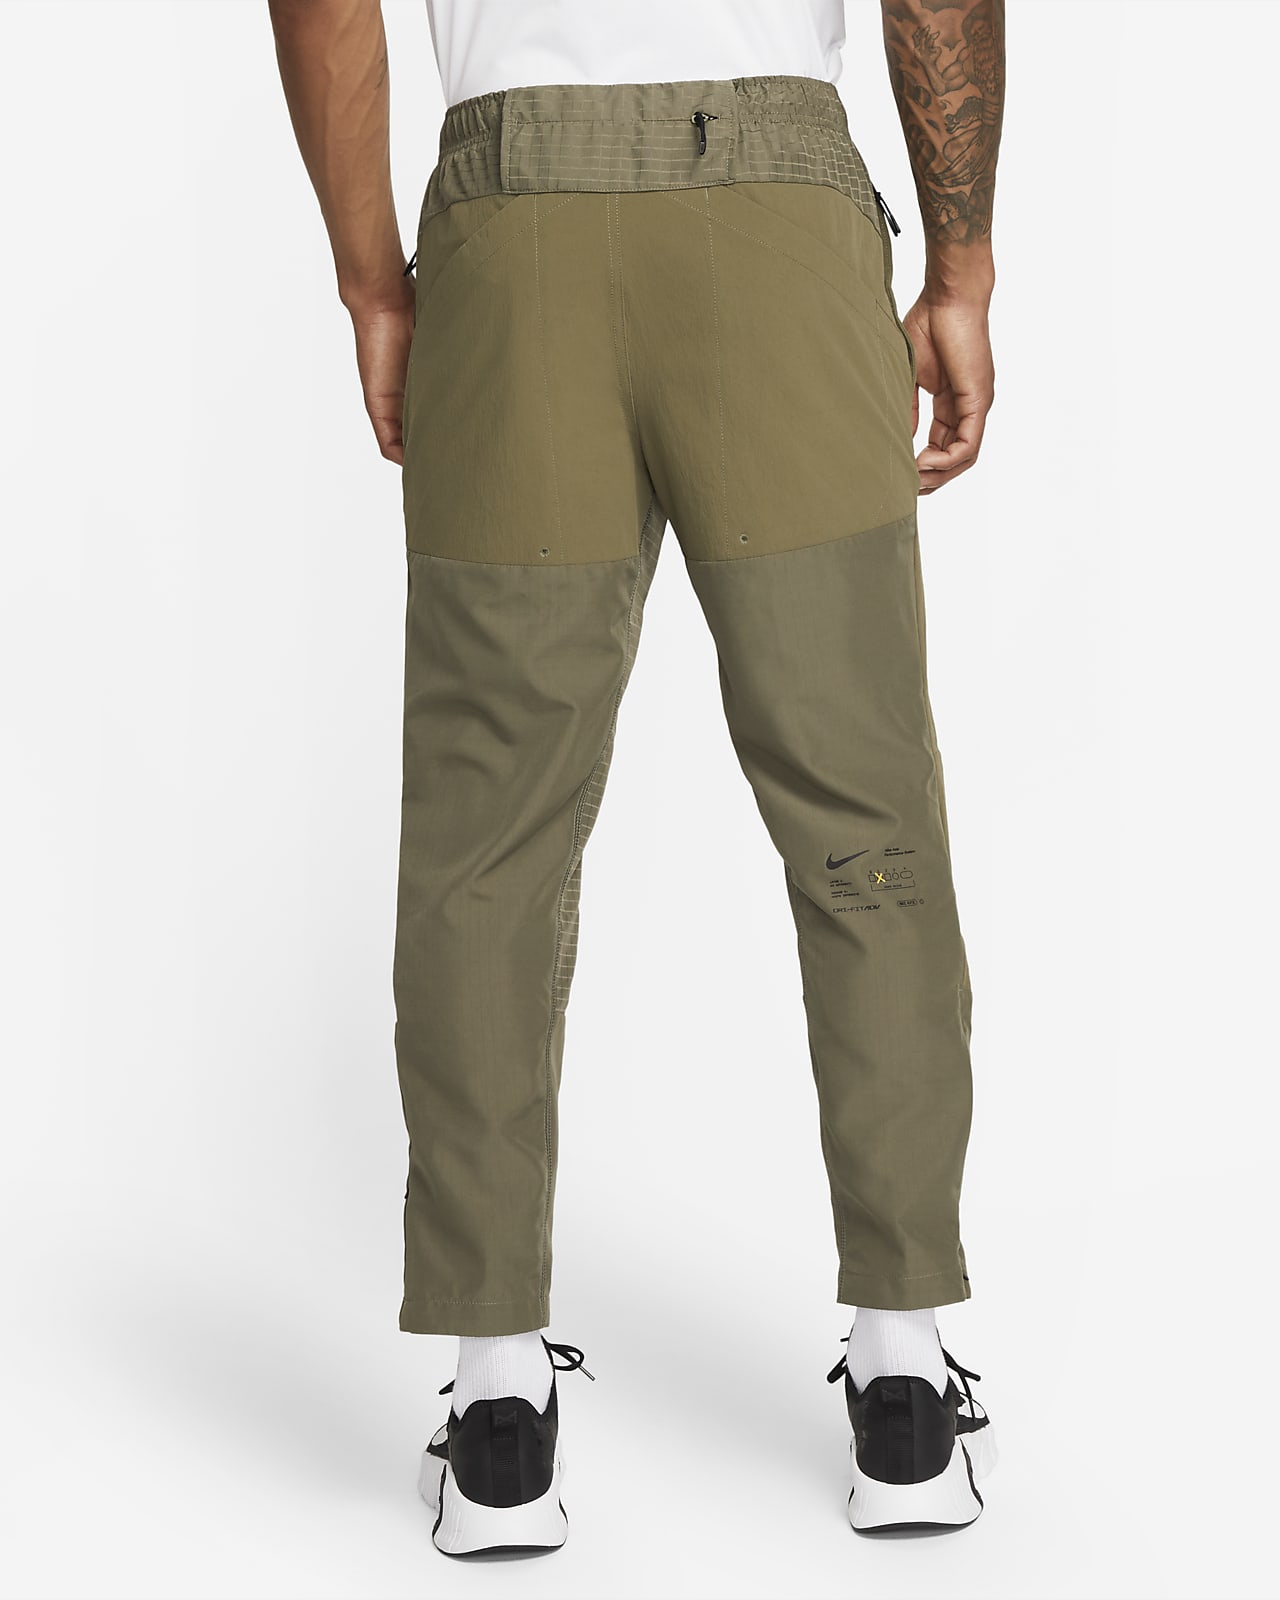 Men\'s Dri-FIT Pants. Woven ADV Nike A.P.S. Versatile